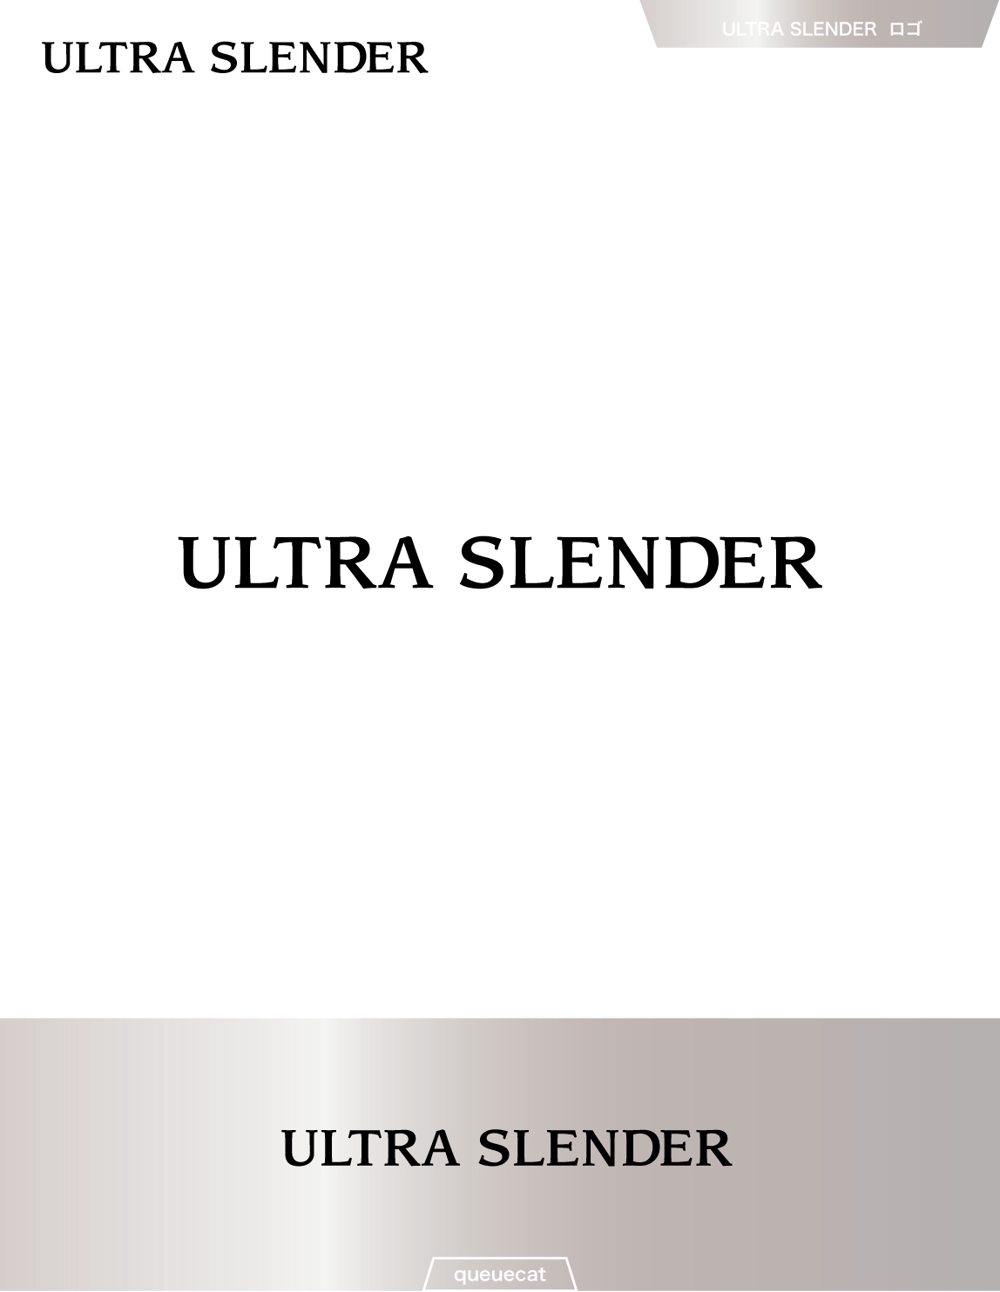 ULTRA SLENDER2_1.jpg